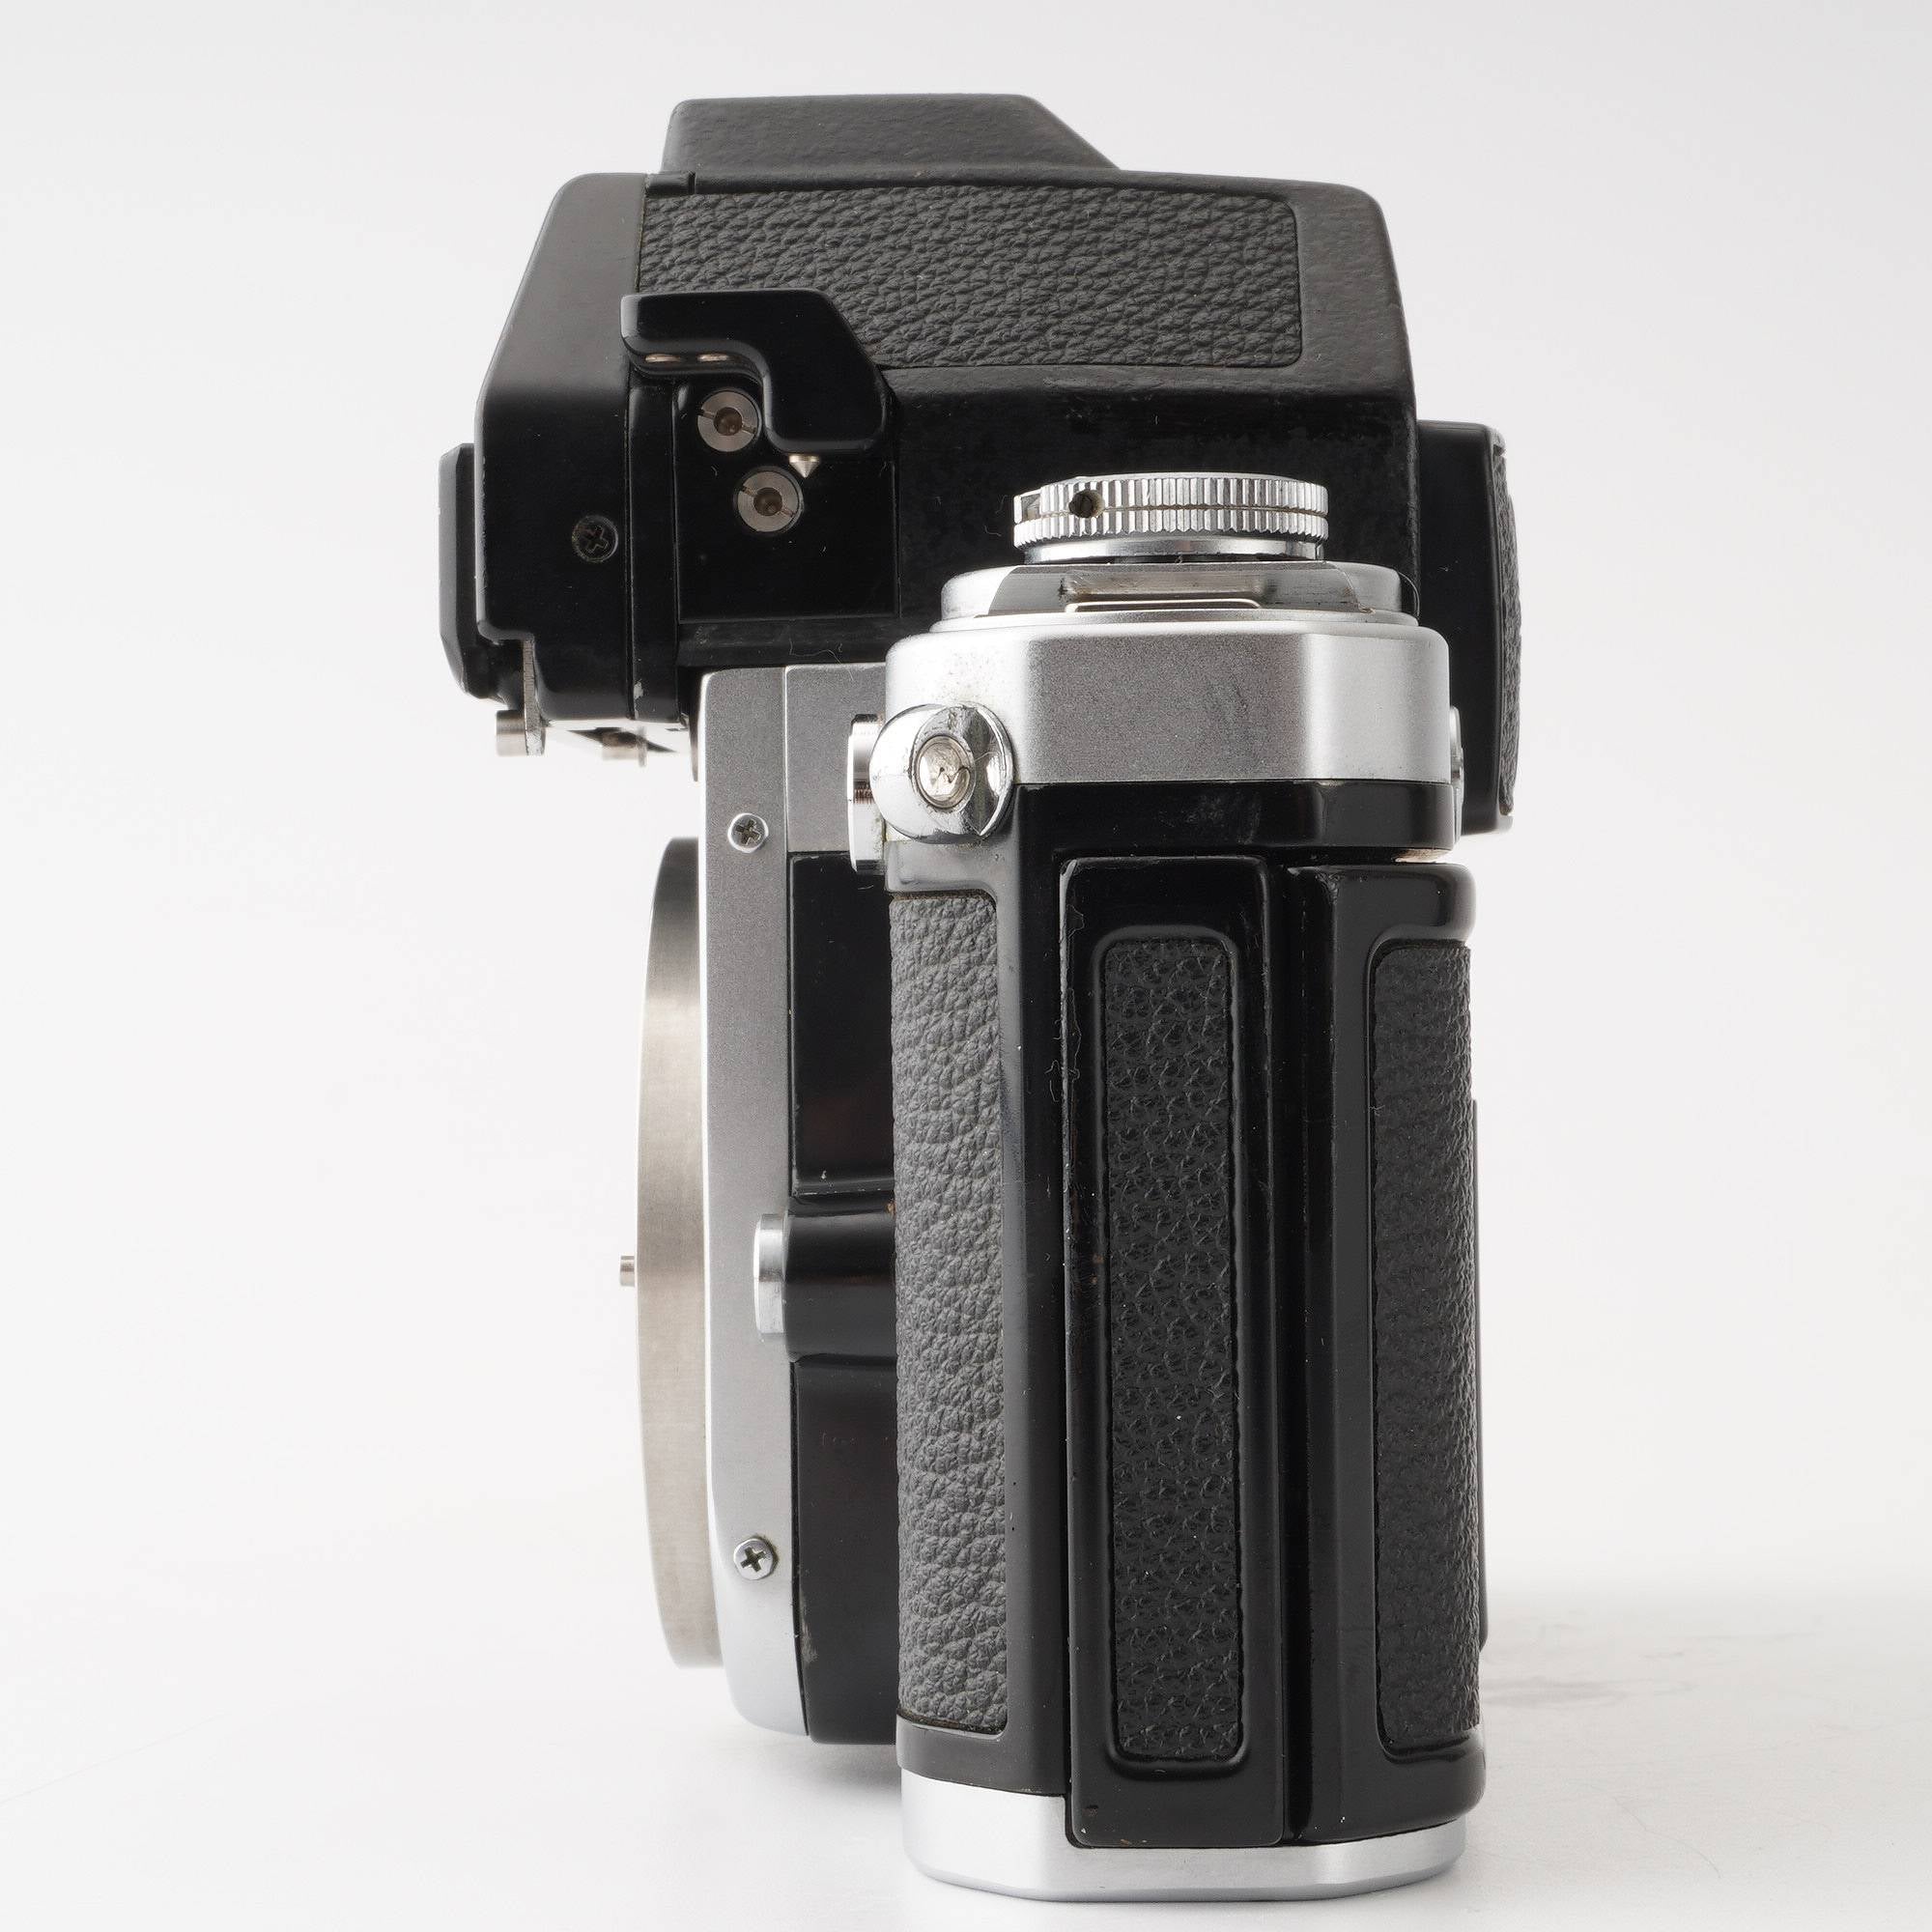 ニコン Nikon F2 フォトミック S 35mm 一眼レフフィルムカメラ